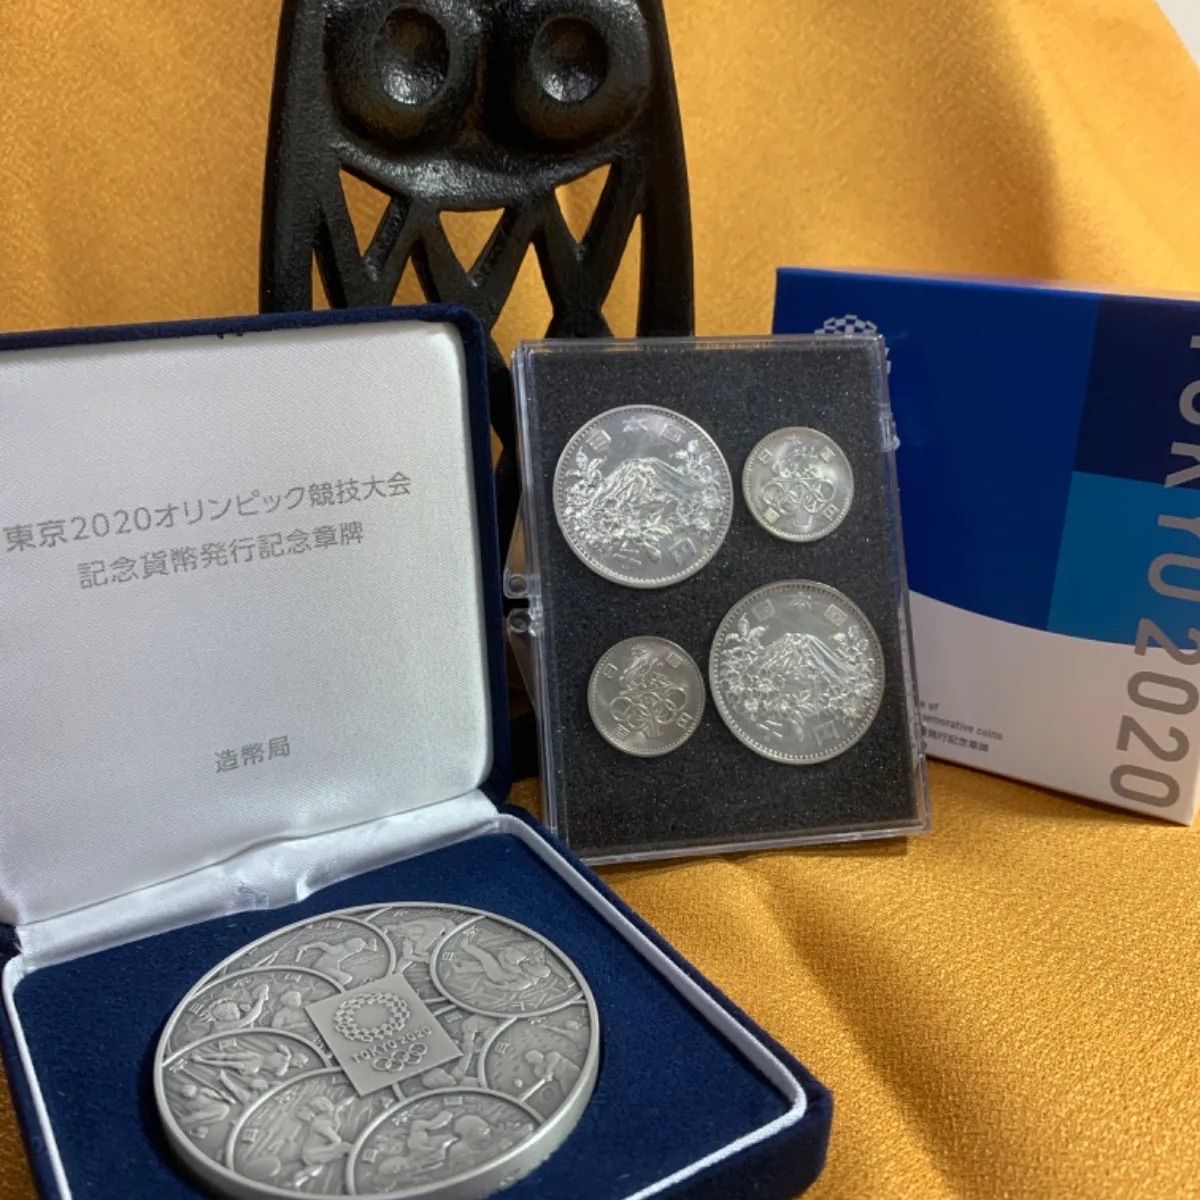 東京2020オリンピック競技大会記念貨幣発行記念章碑 - コレクション